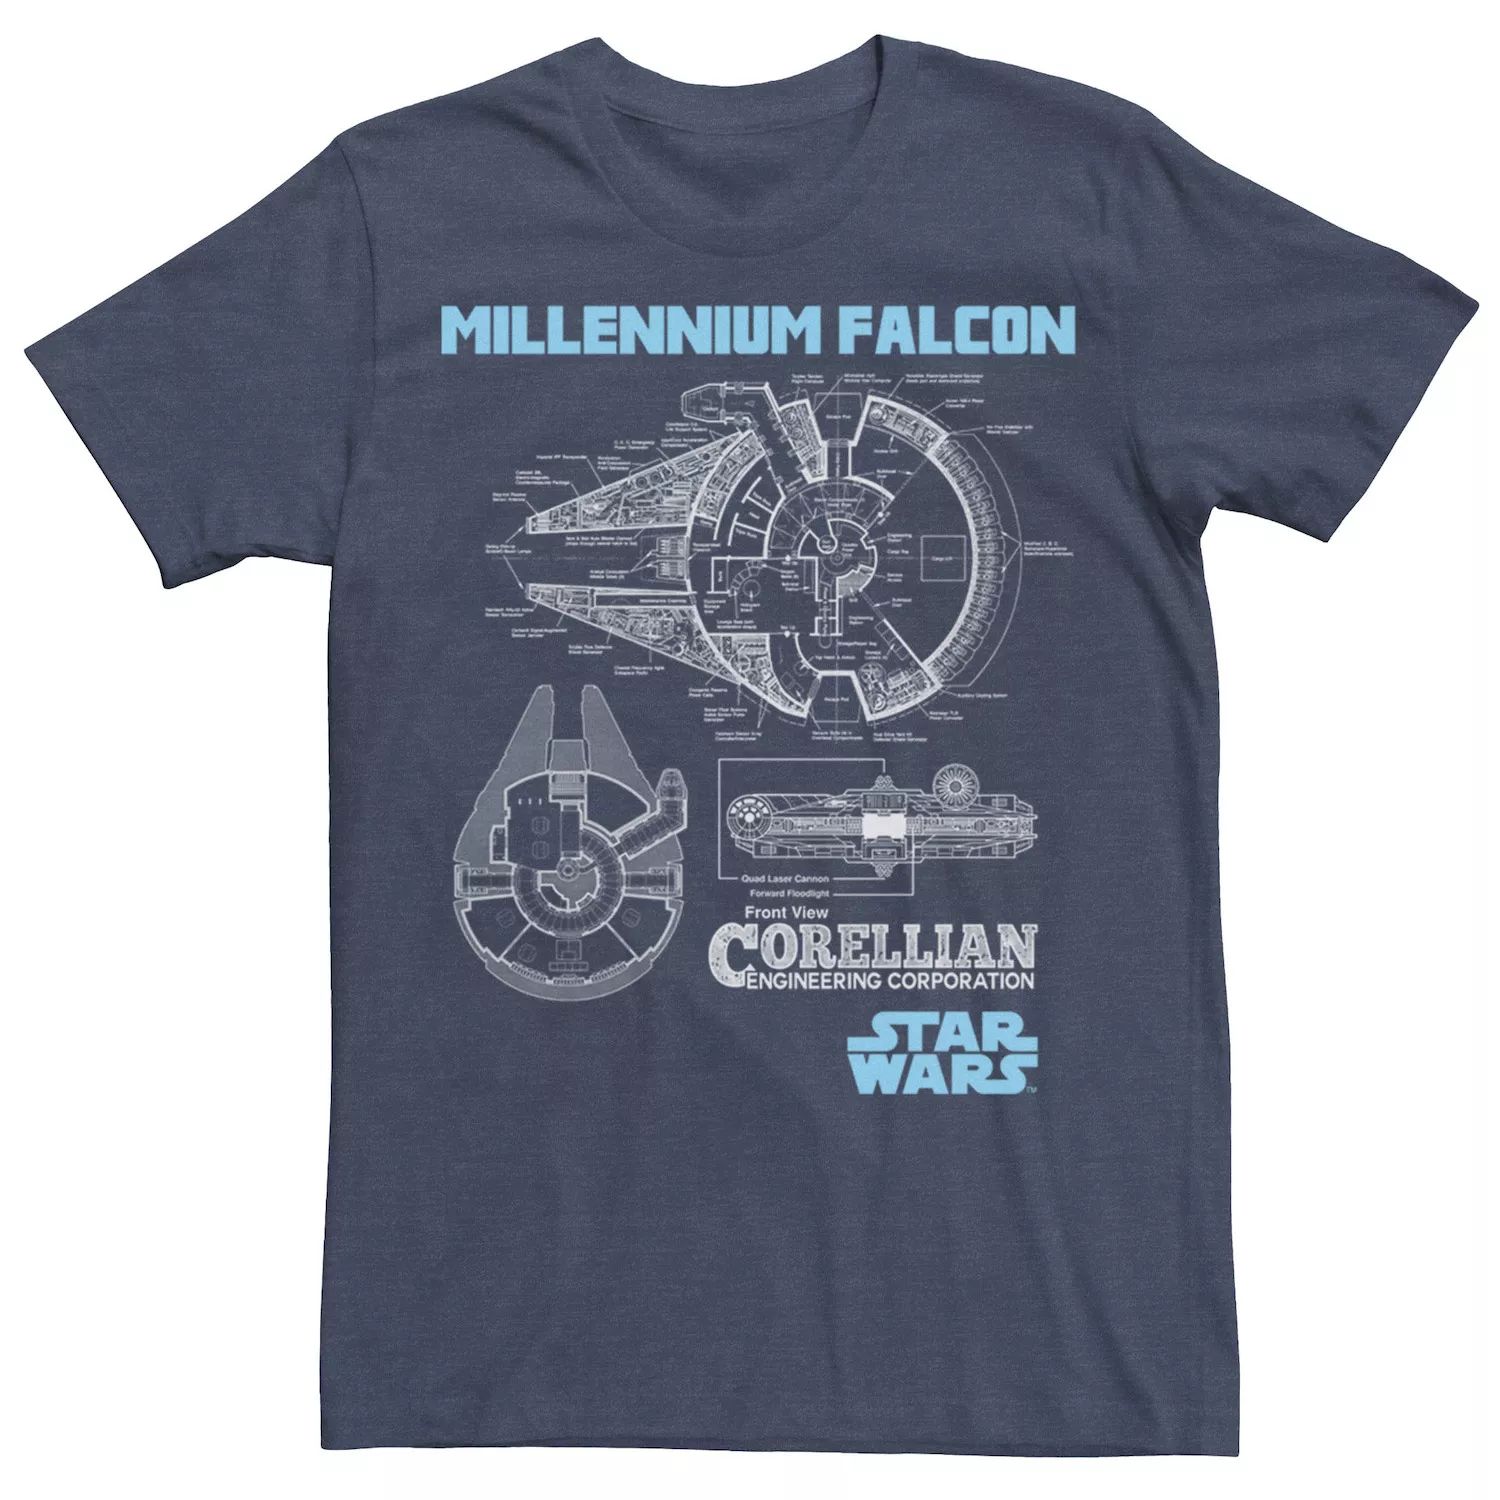 Мужская футболка с изображением кореллианского торгового корабля «Сокол тысячелетия» Star Wars мужская футболка с рисунком сокол тысячелетия по звездным войнам star wars